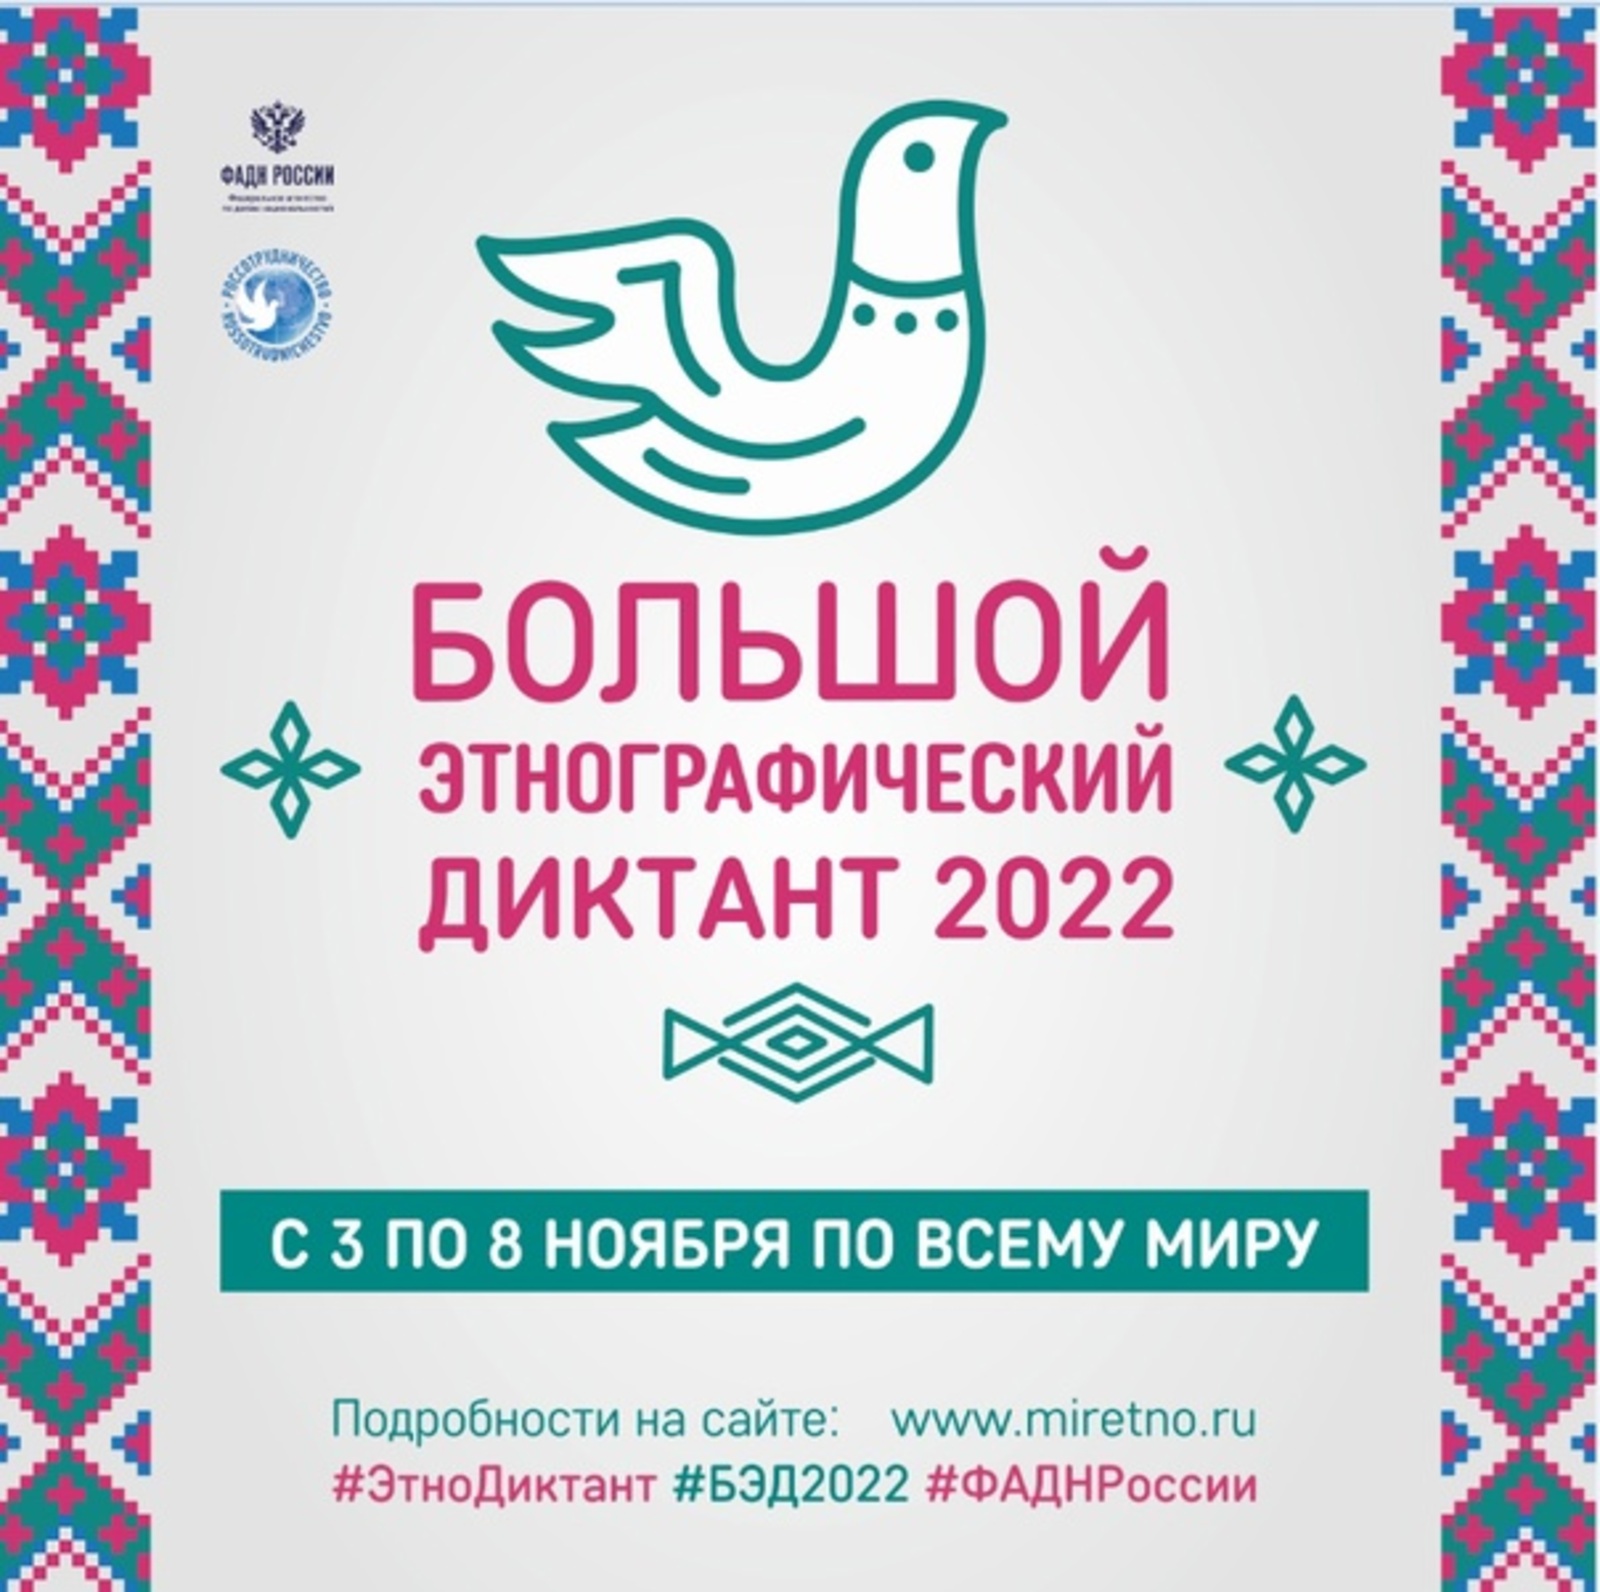 Жители Башкирии могут принять участие в «Большом этнографическом диктанте» с 3 по 8 ноября